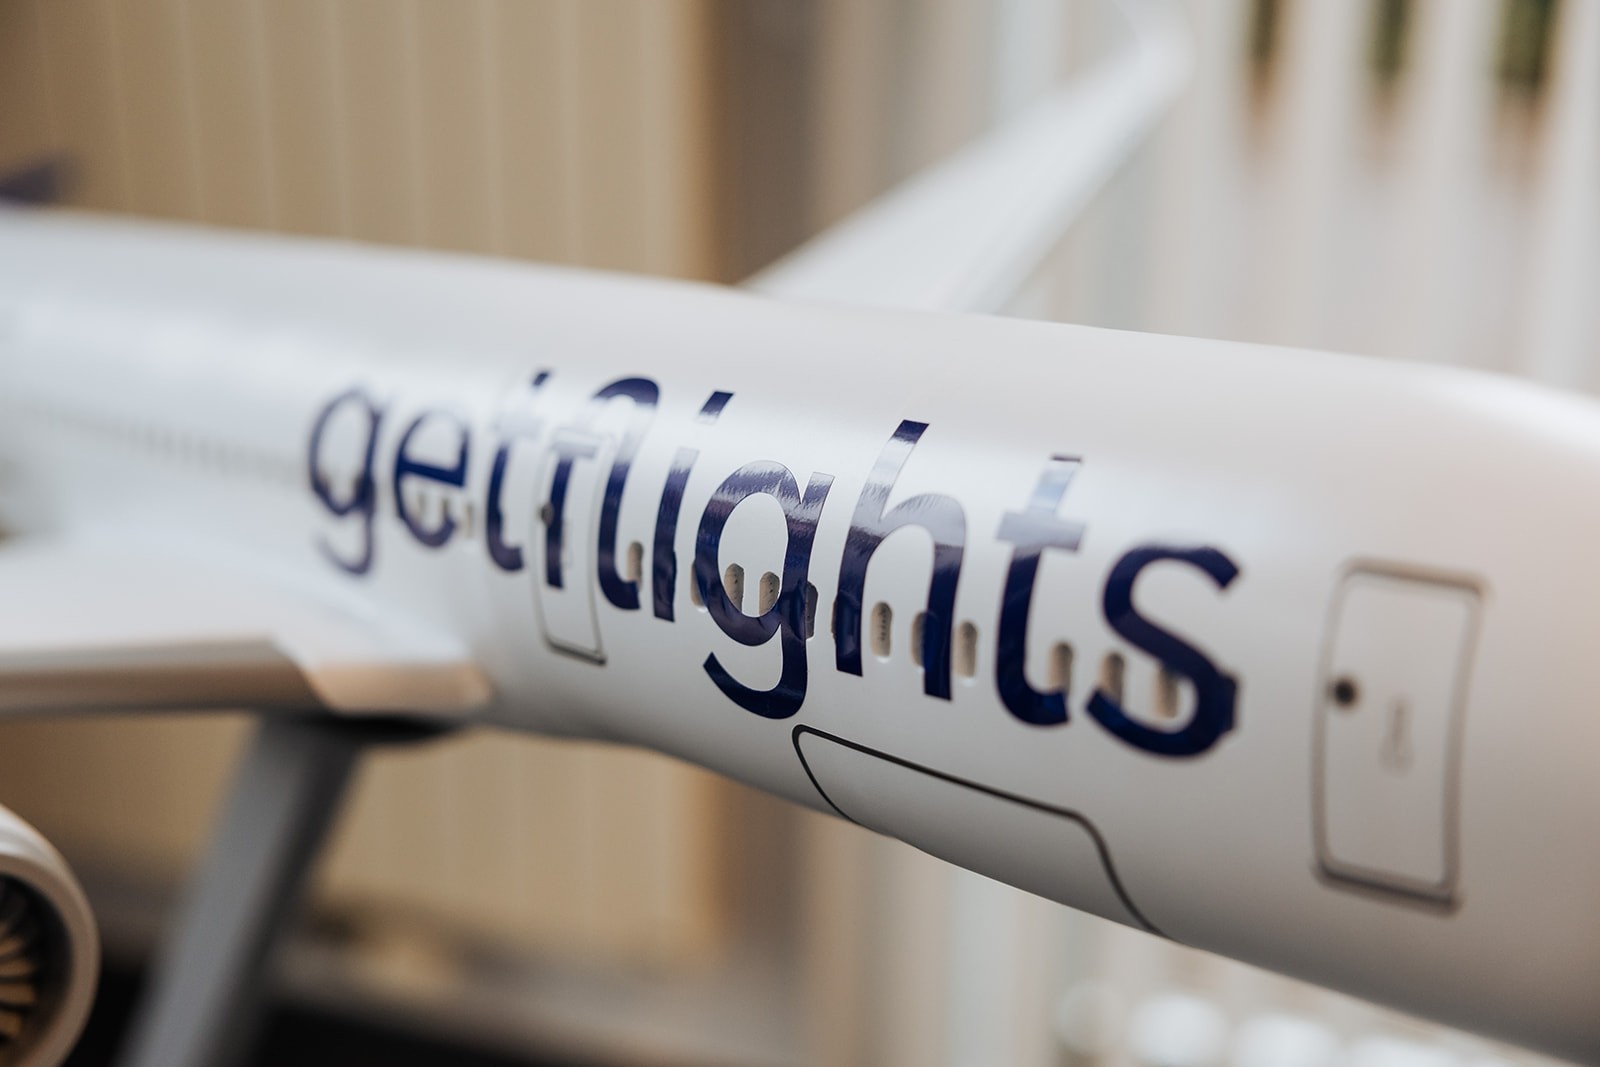 Getflights Plane